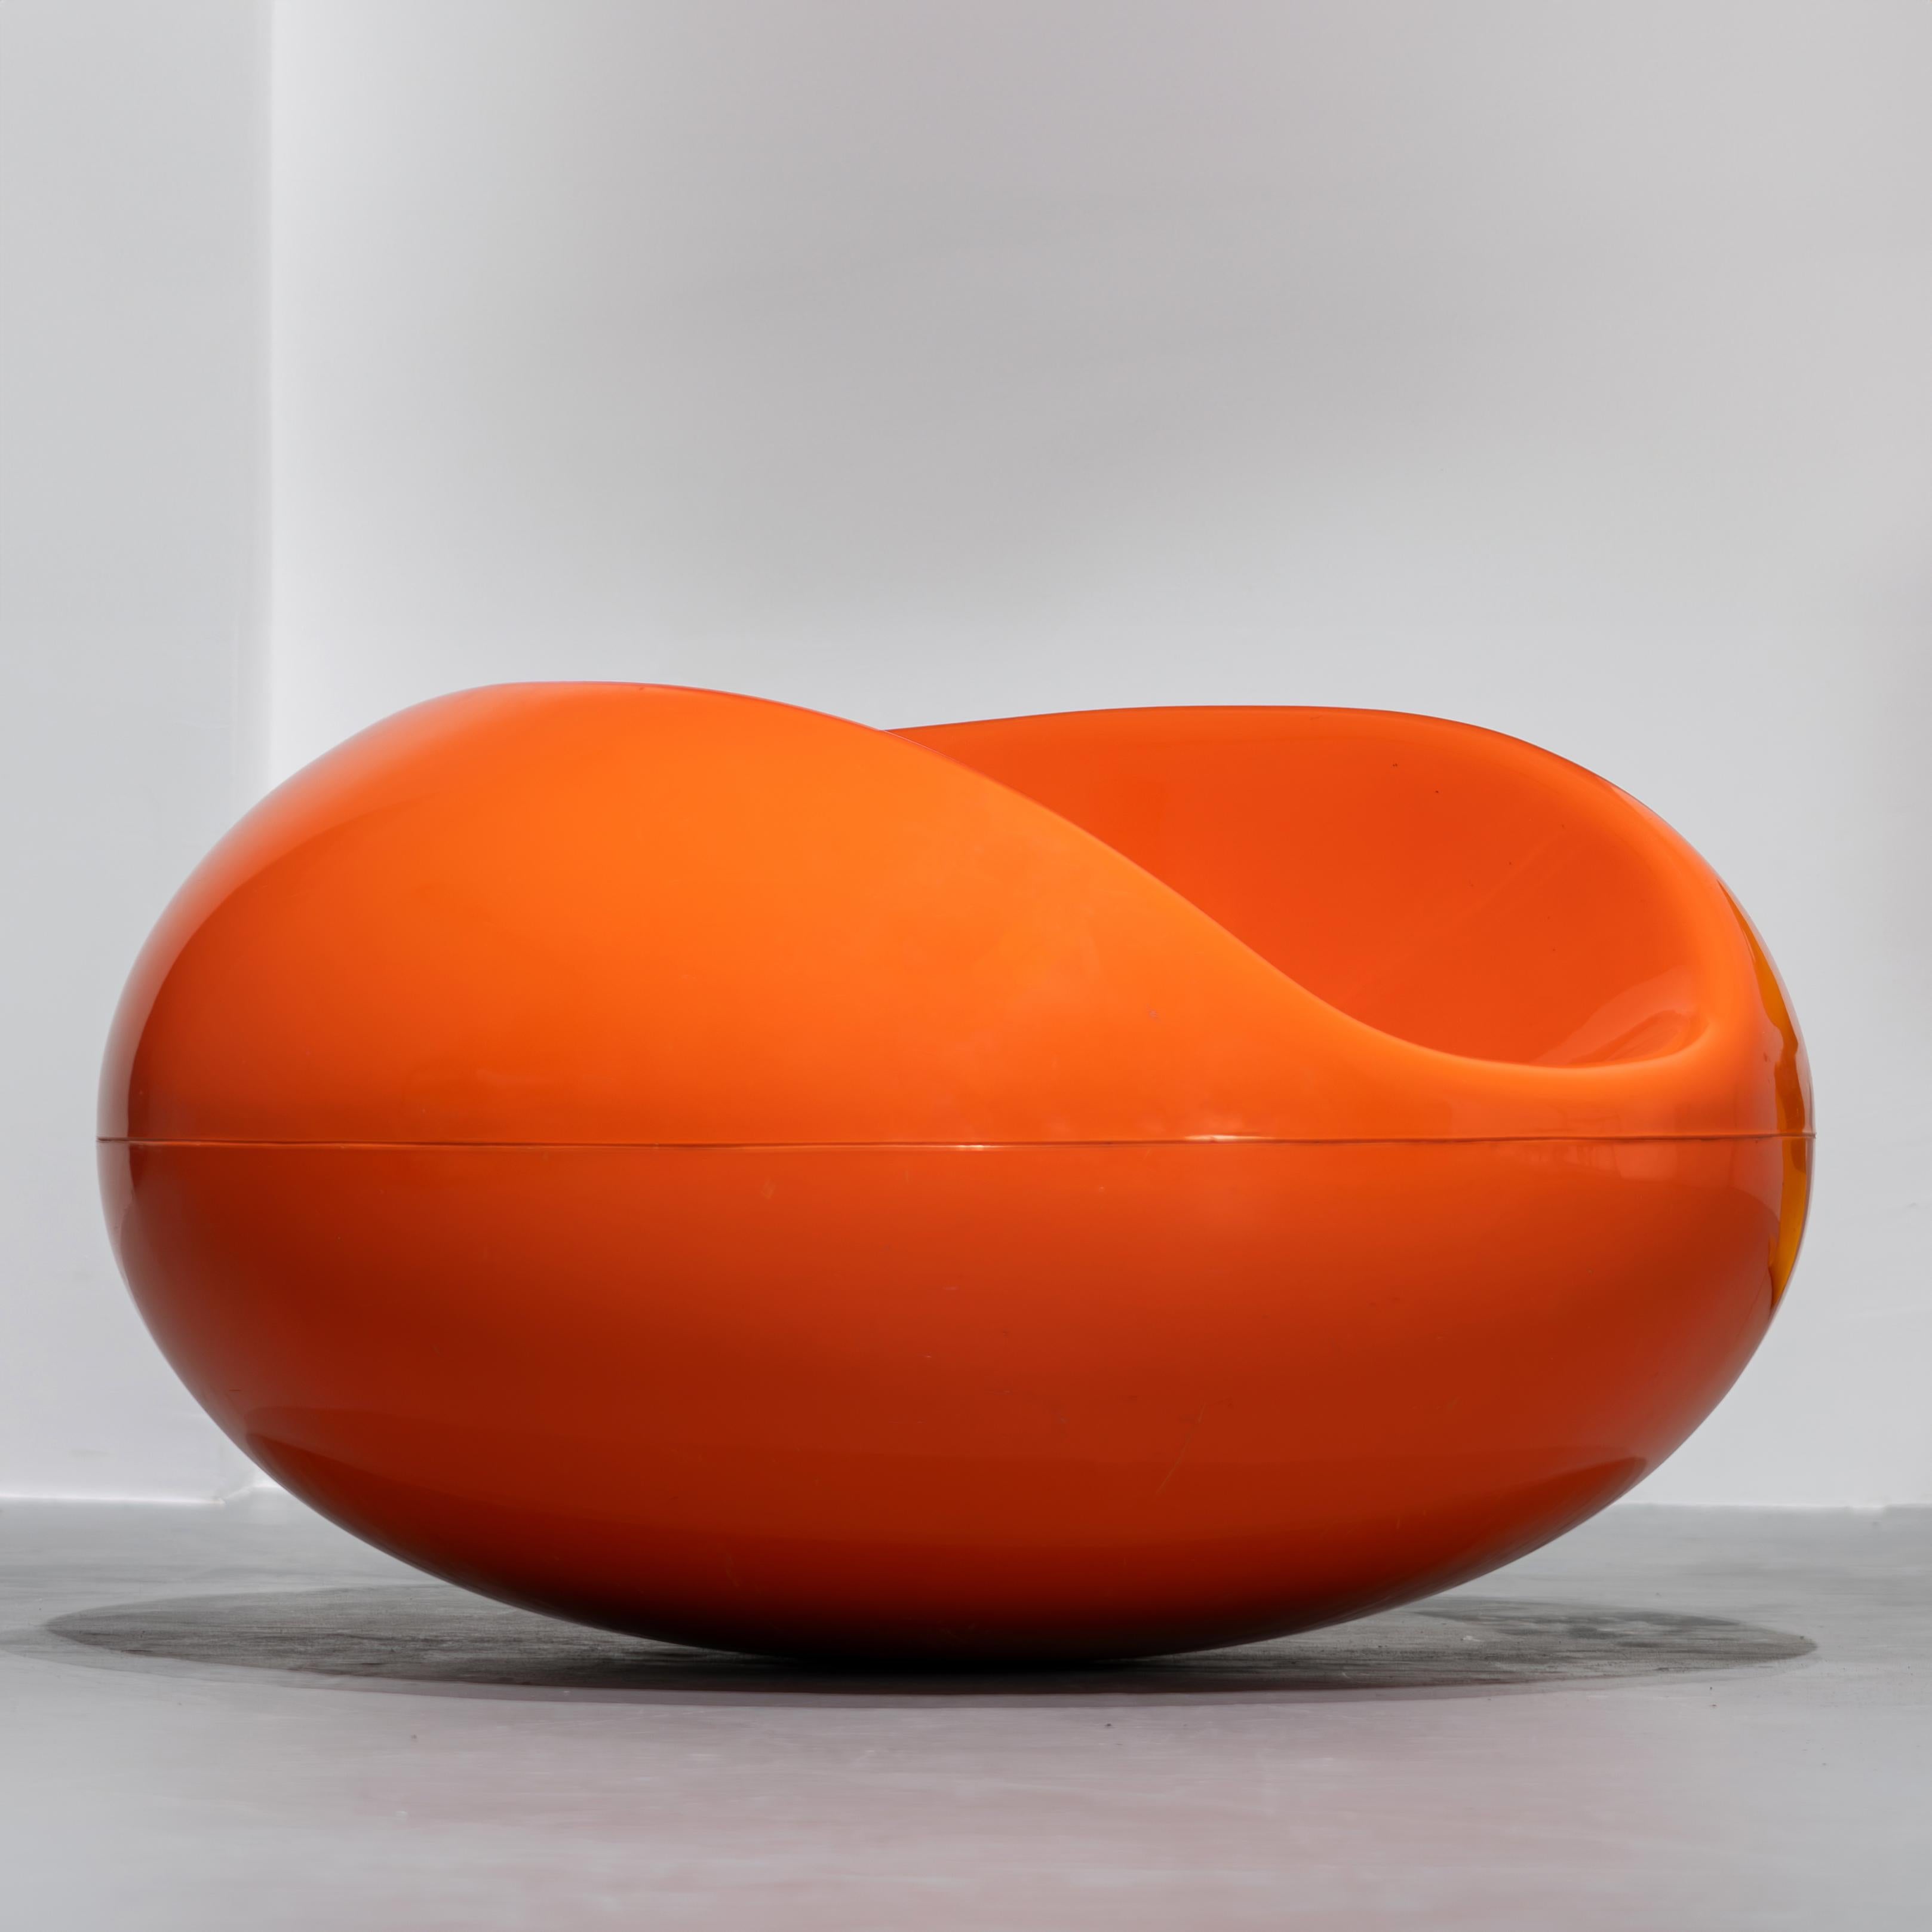 Eero Aarnio - 1. Serie Pastil Chair in leuchtendem Orange, 1967 von Asko, Finnland.

Eero Aarnio fertigte den ersten Prototyp des Pastil-Stuhls aus Styropor an, mit dessen Hilfe er die Maße, die Ergonomie und die Schaukeleigenschaften überprüfen